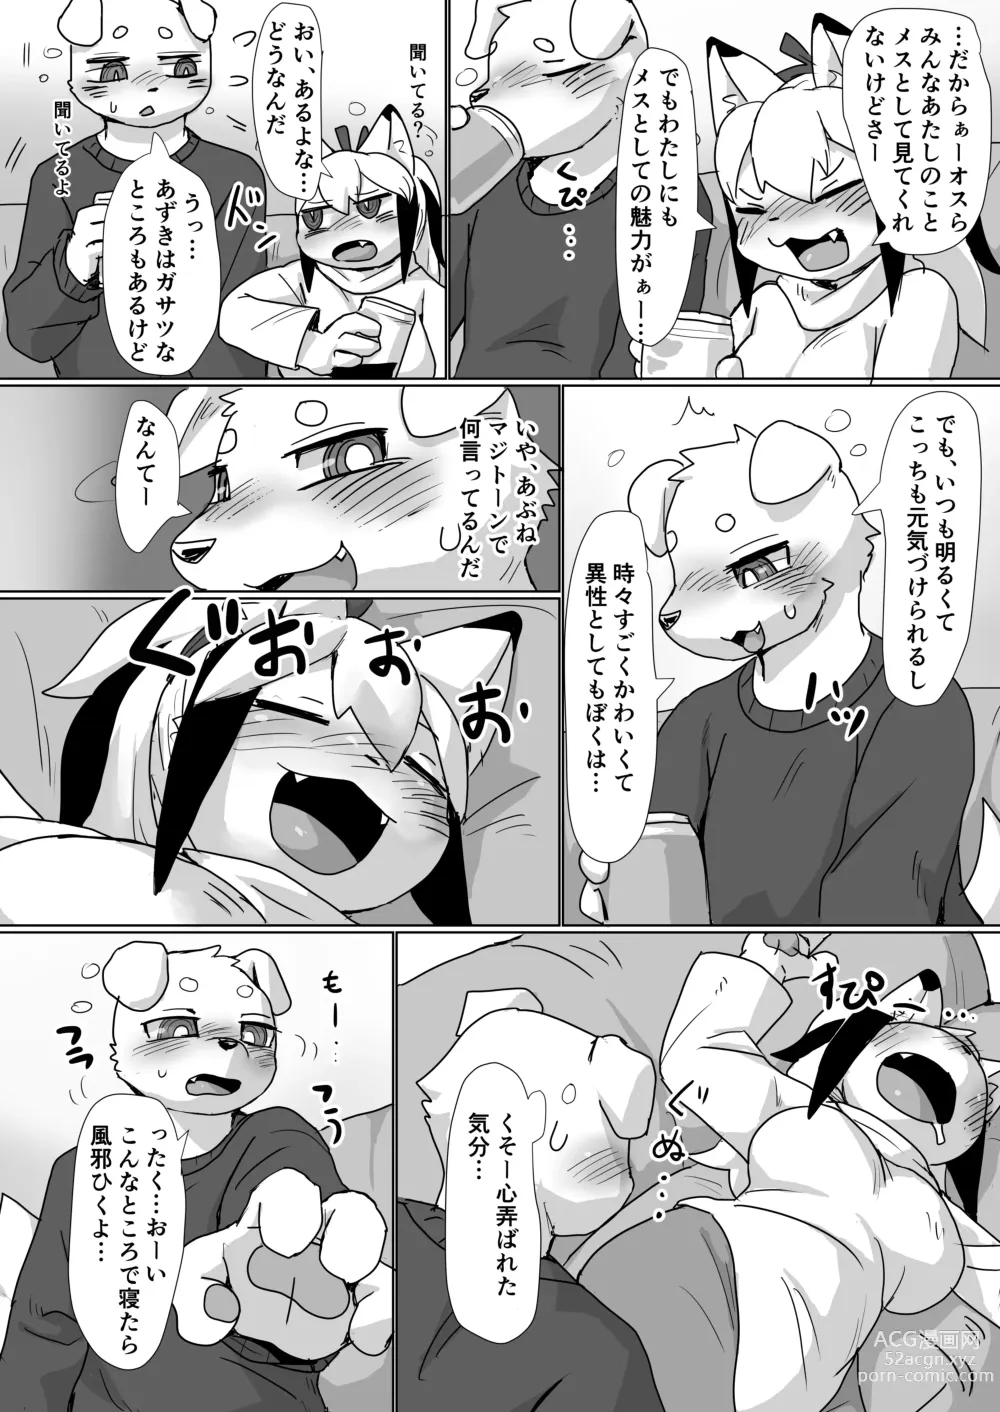 Page 5 of doujinshi Koyoi Itsumo no Nomi Tomo to